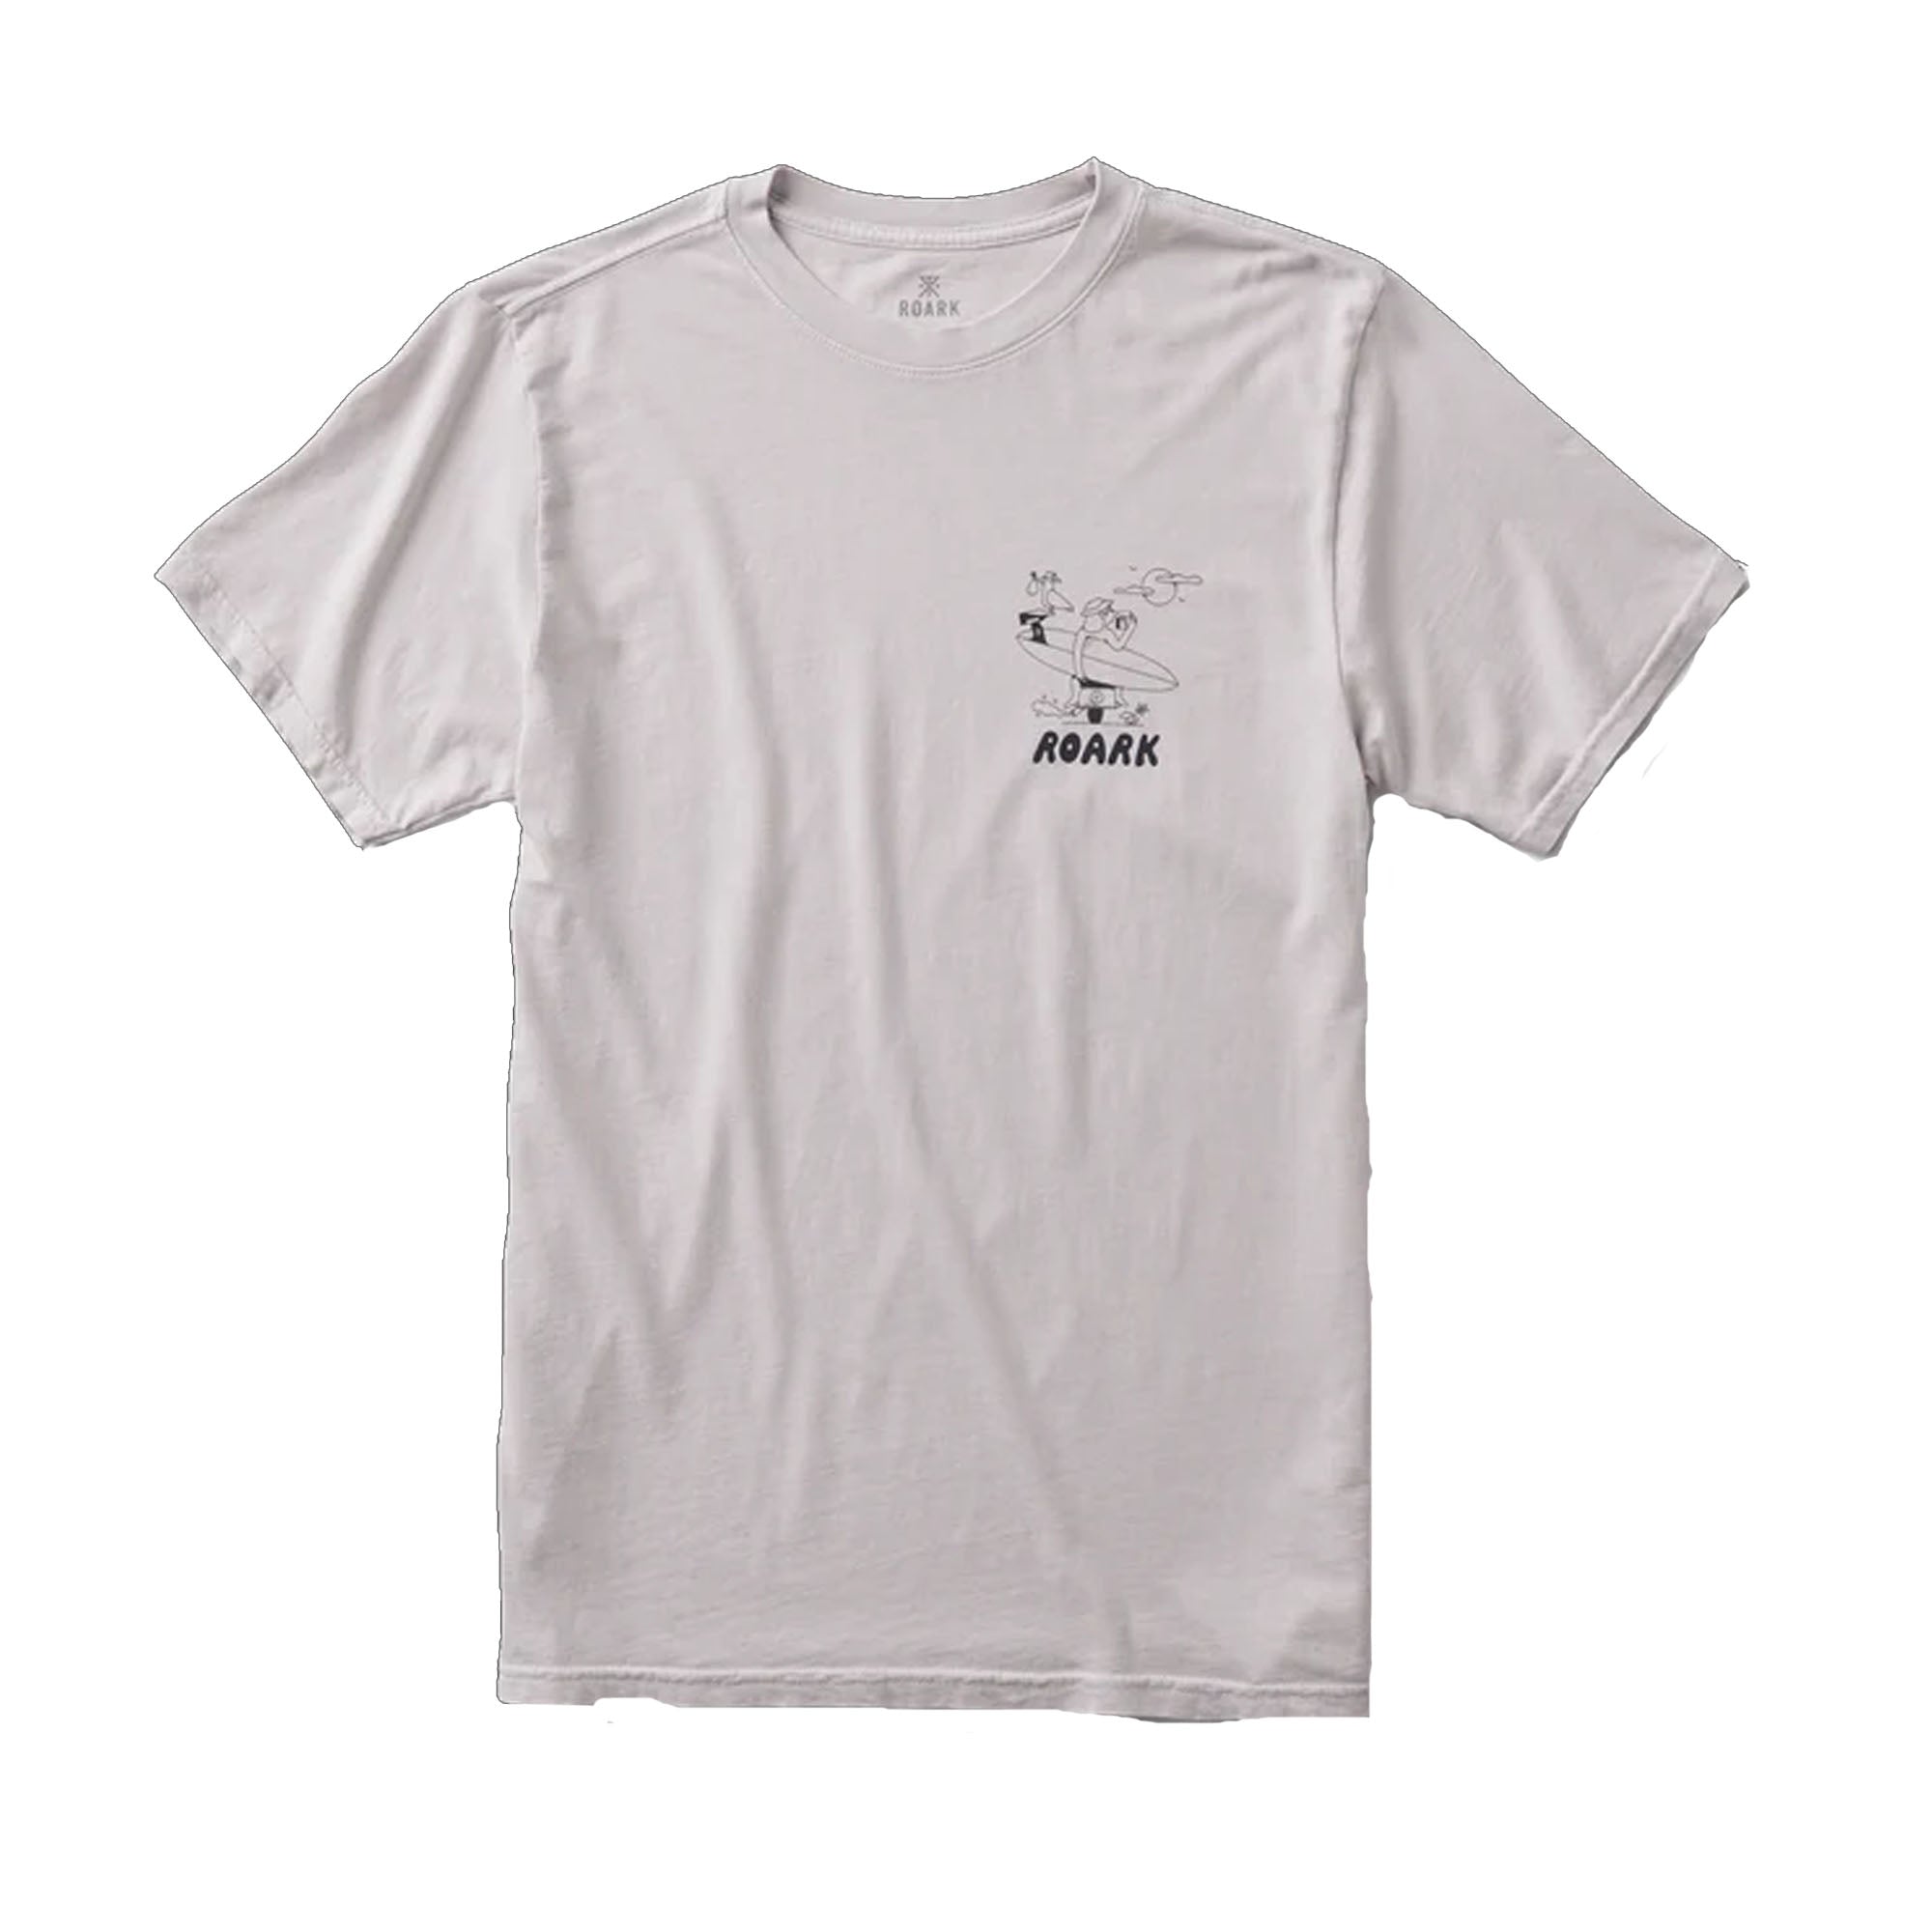 Roark Roadtrip Club Premium Men's S/S T-Shirt